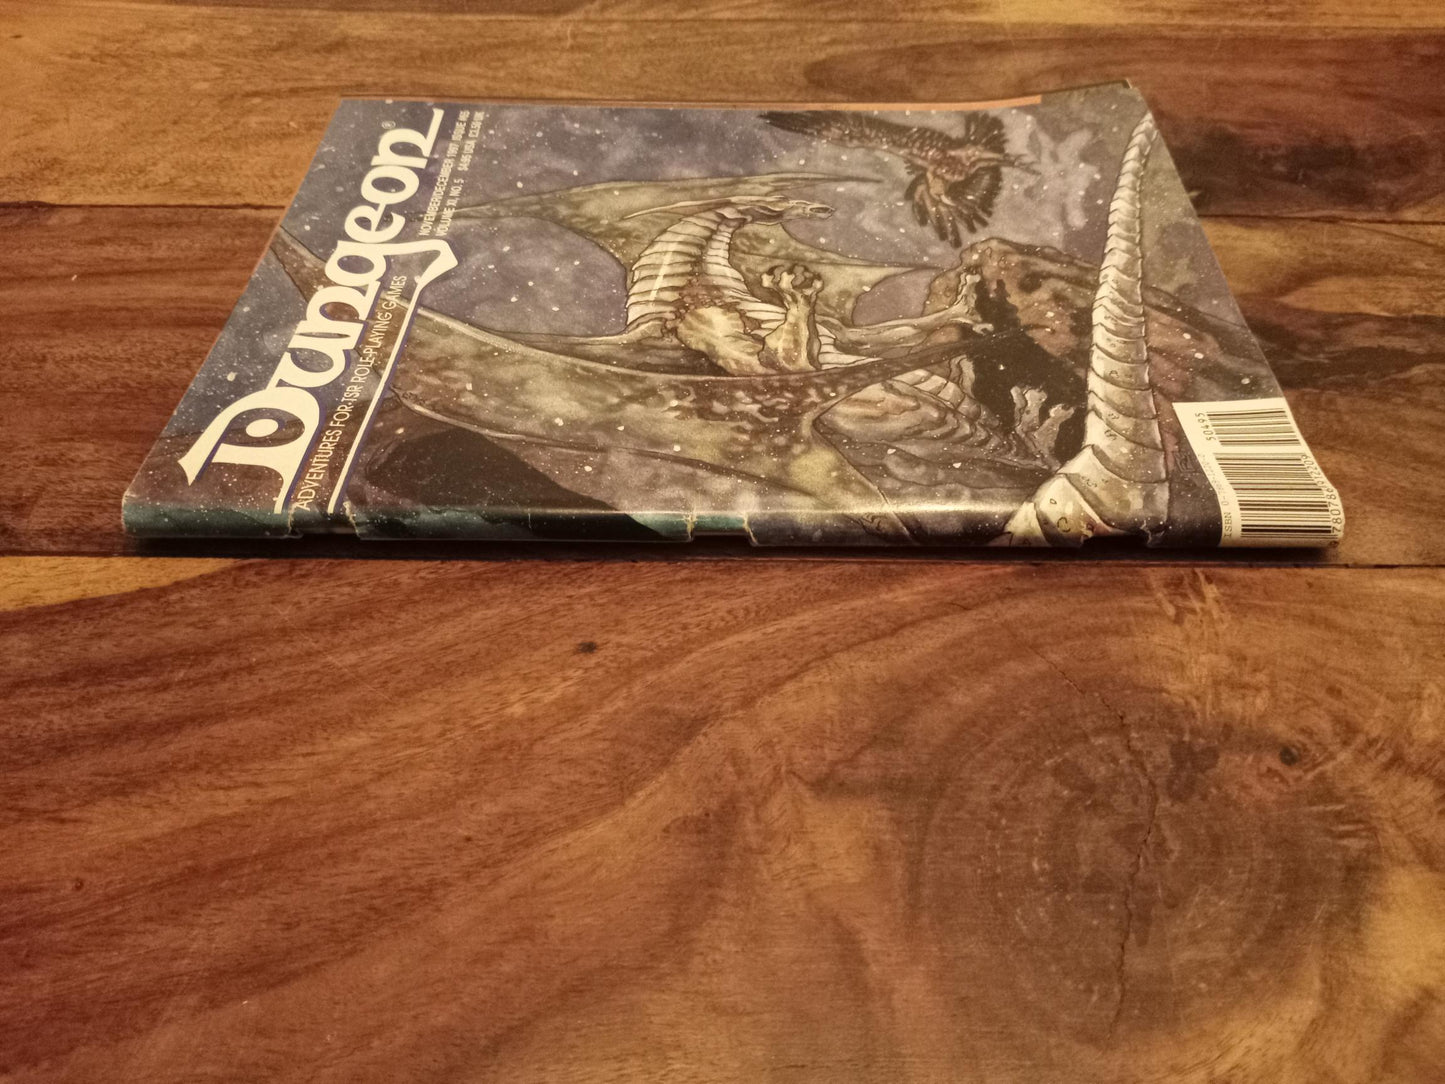 Dungeon Magazine #65 Vol. XI No. 5 Nov/Dec 1997 TSR D&D